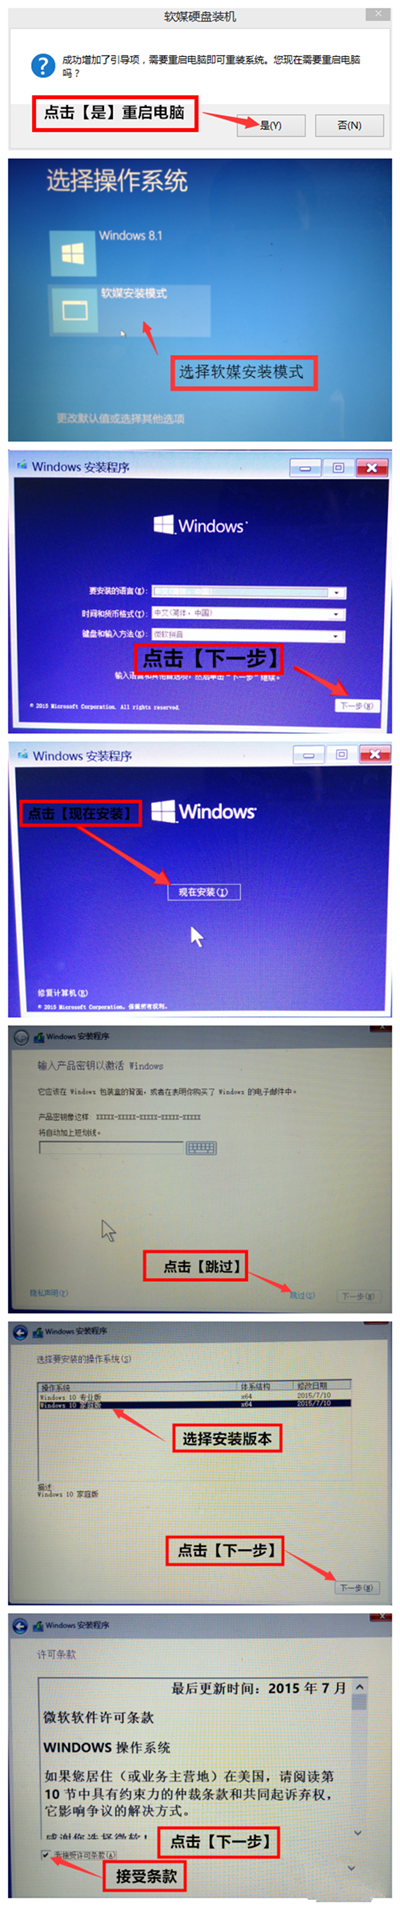 windows10安装windows8.1双系统